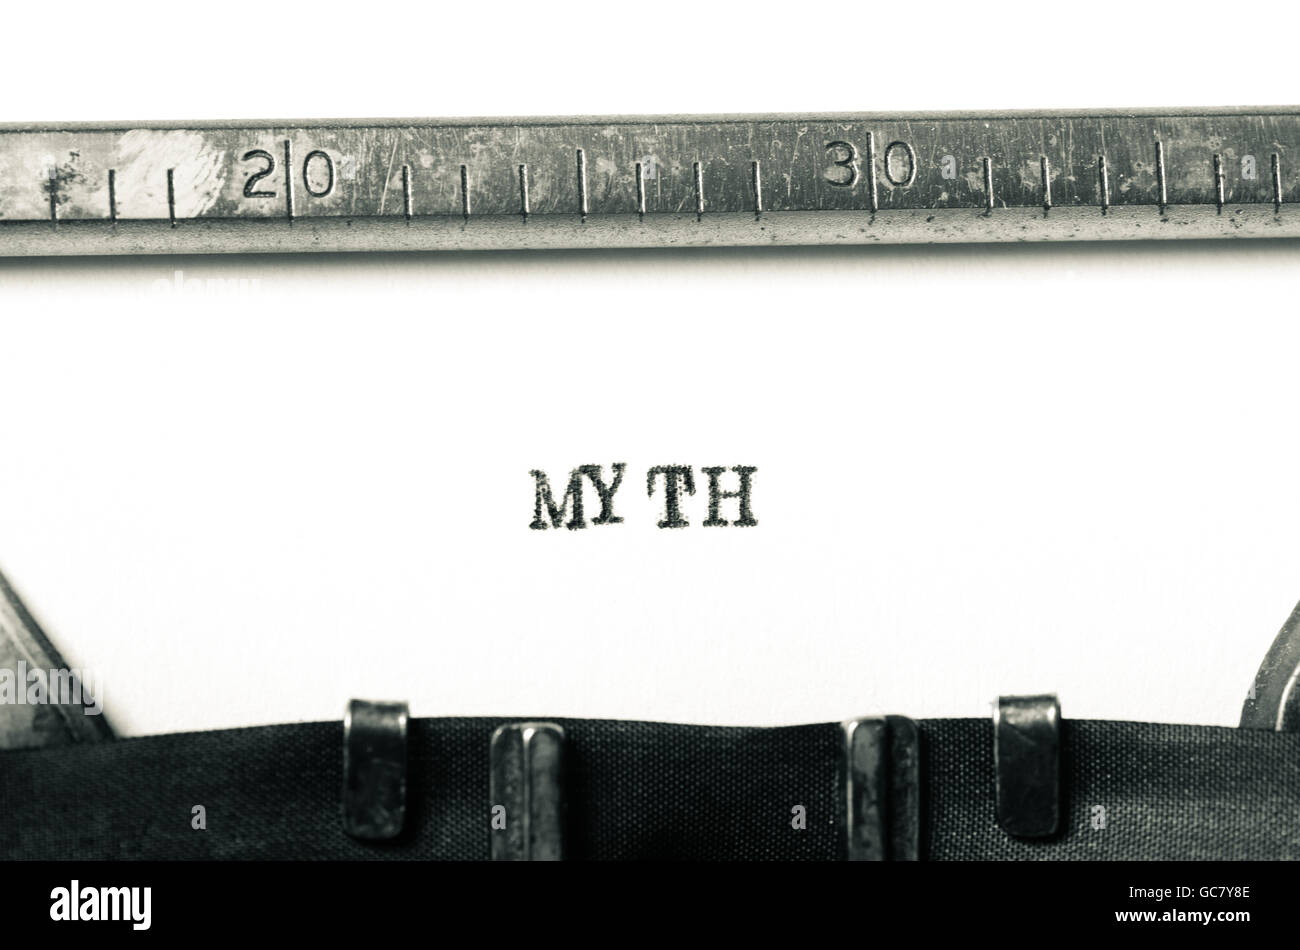 Wort-Mythos auf alte Schreibmaschine getippt Stockfoto